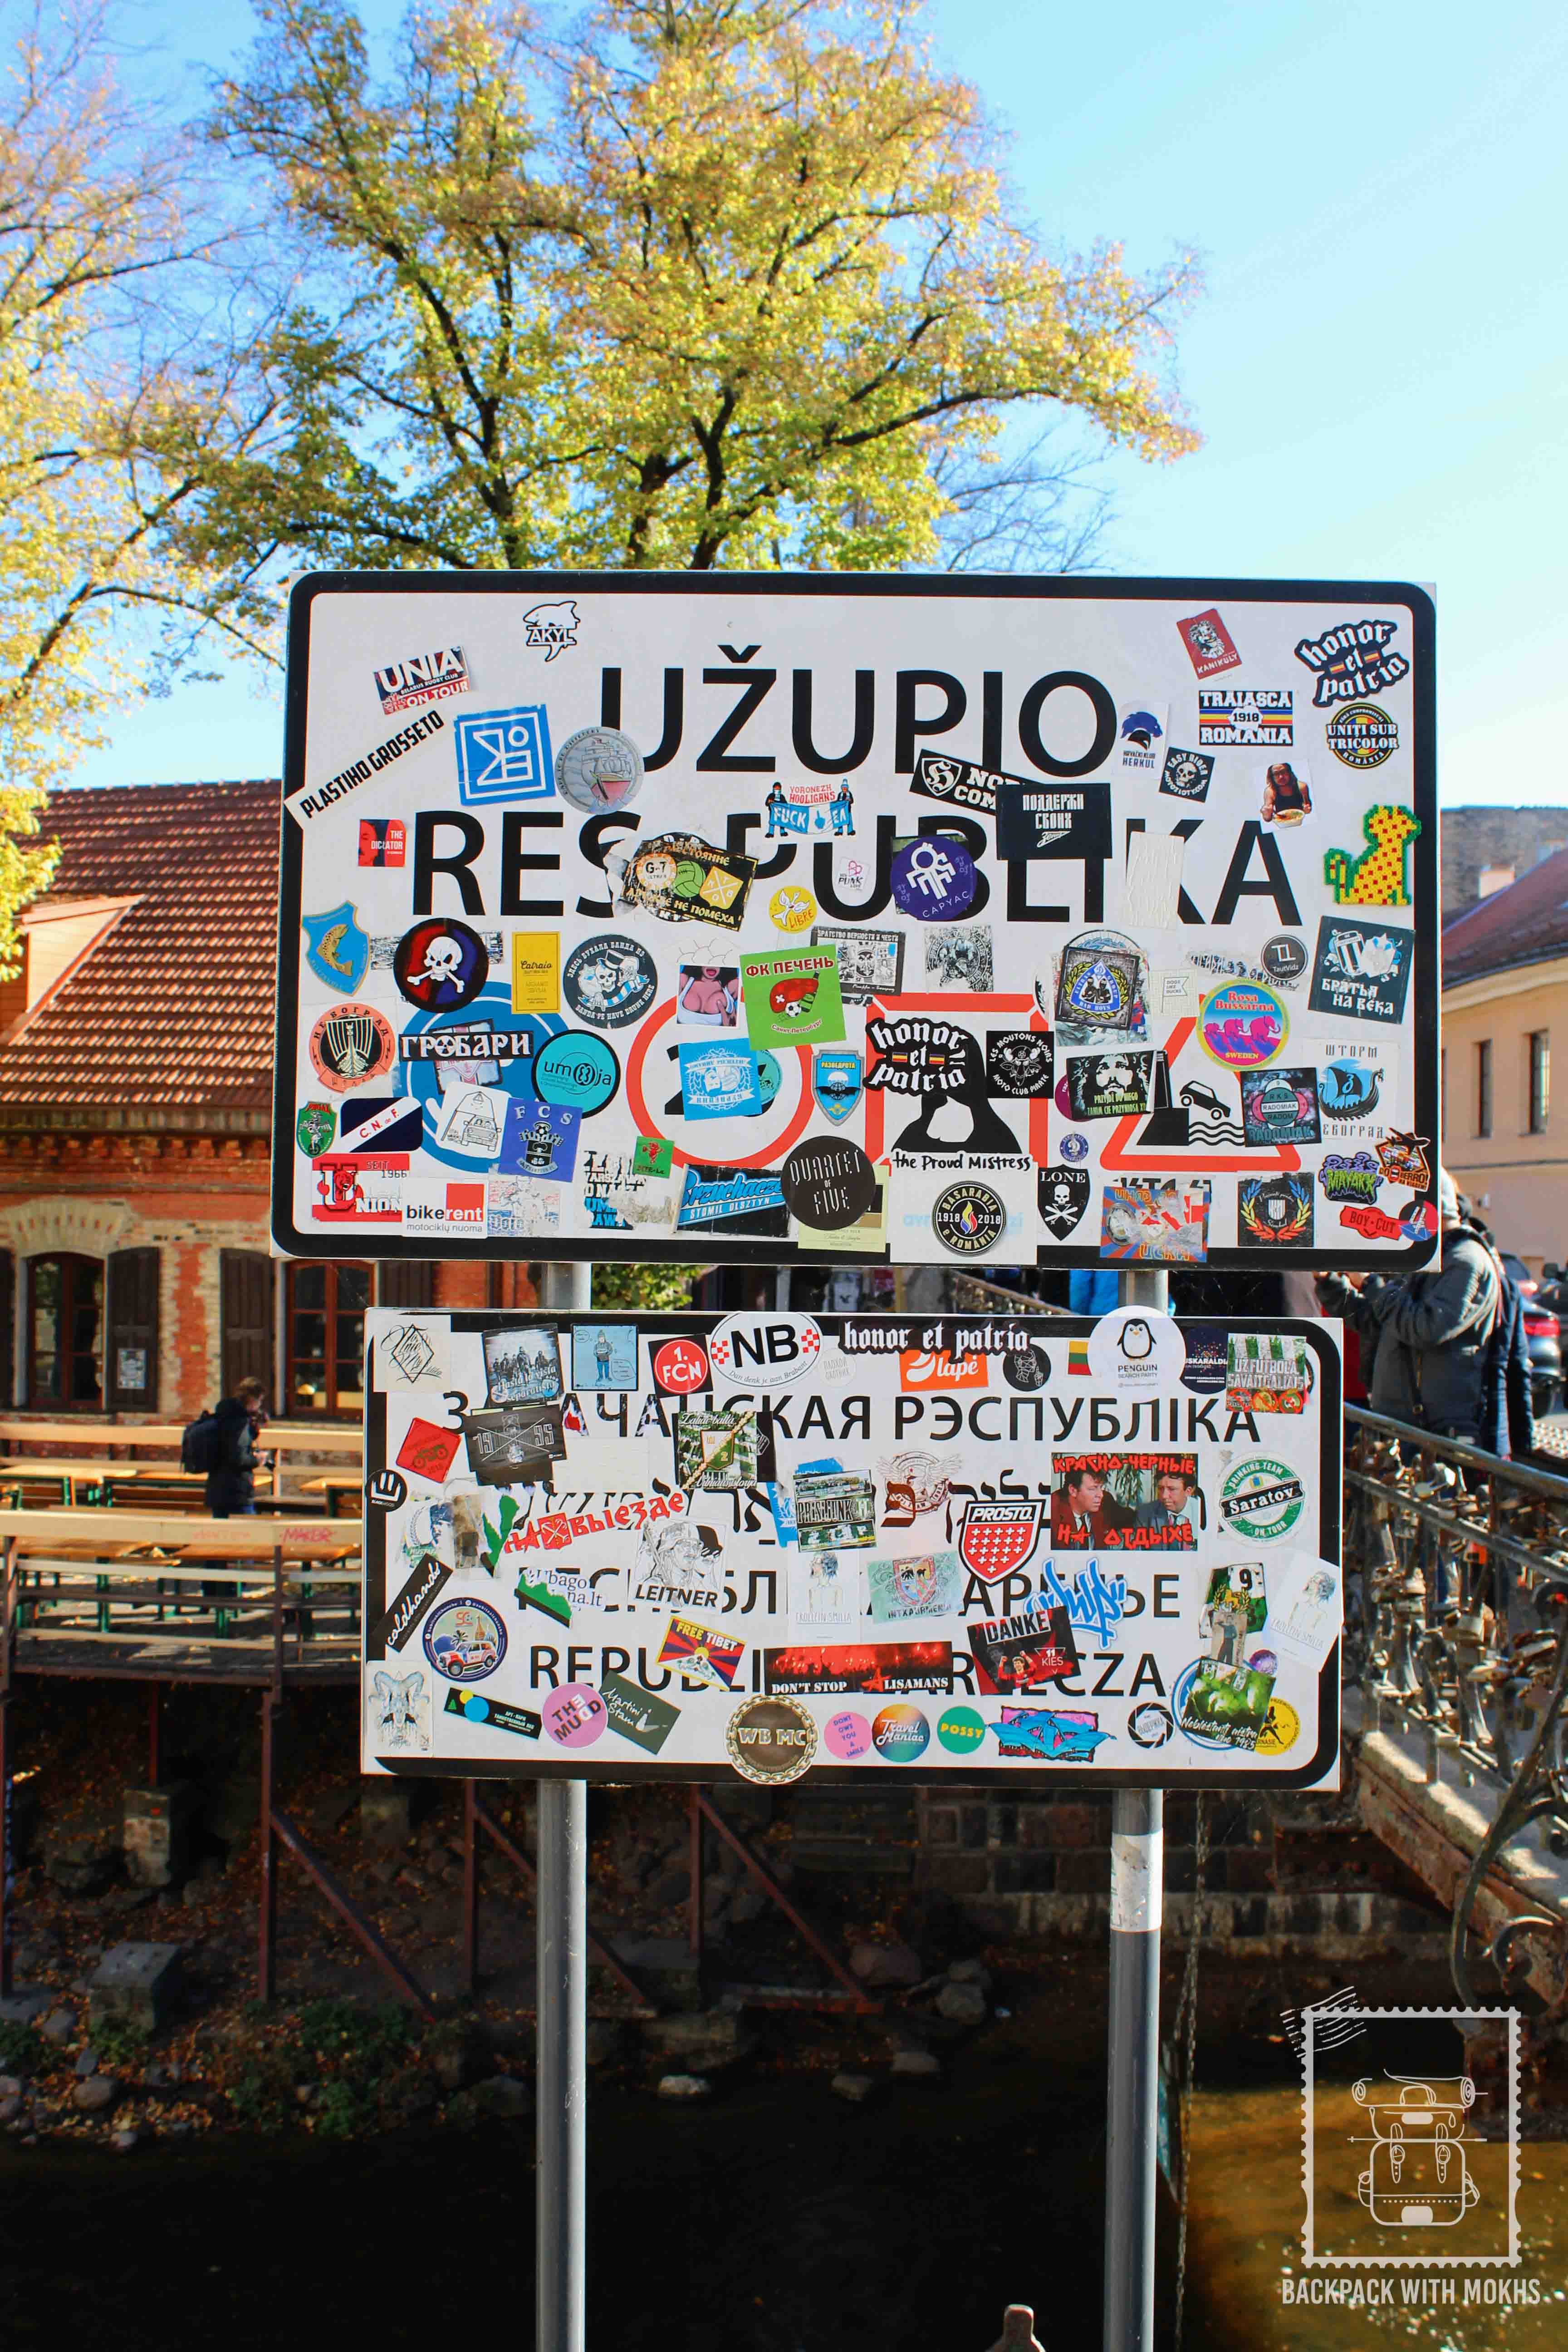 Republic of Uzupis